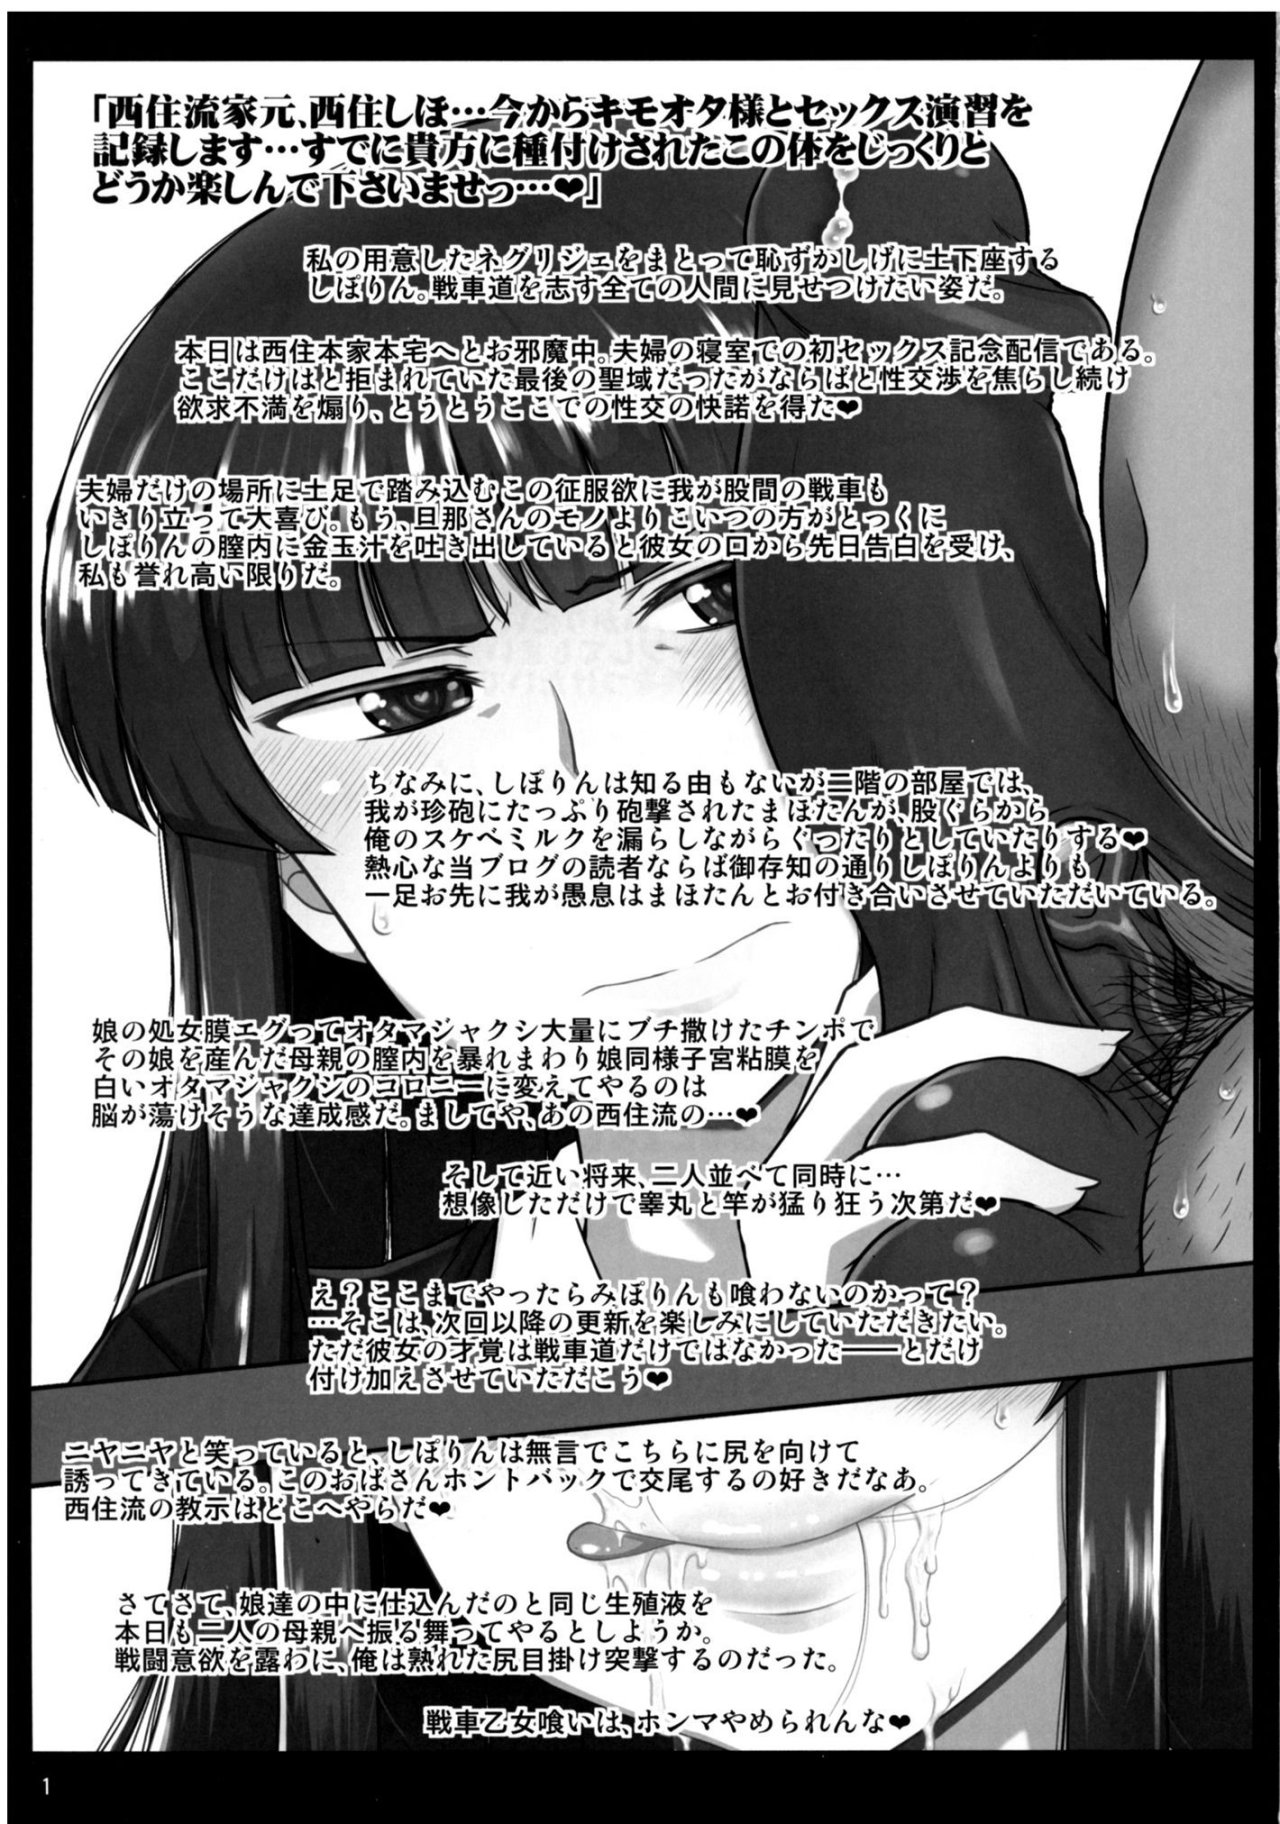 Girls & semen-Nishizumi Shiho No Moteamashita Ureure Body Parte 3 - 1